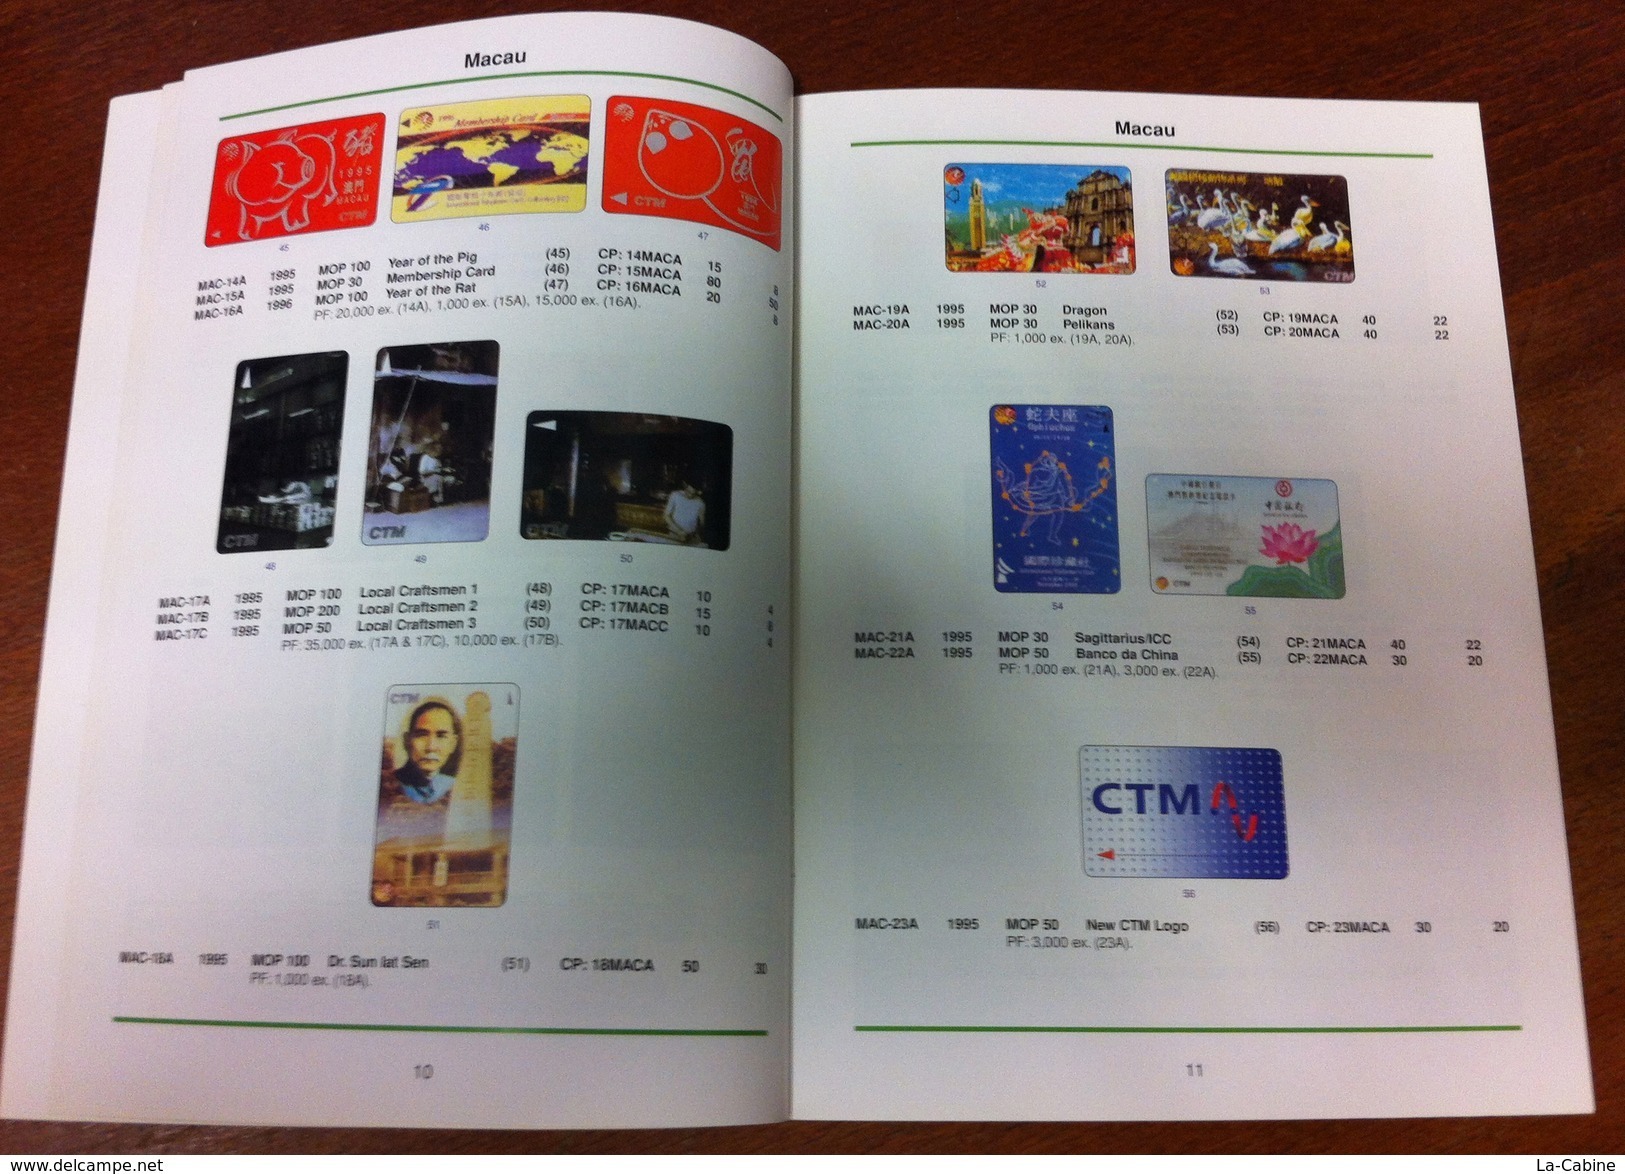 TELECARTE PHONECARD CATALOGUE N°3 MACAU & VIETNAM DE 2001 EN BON ÉTAT 32 PAGES - Books & CDs